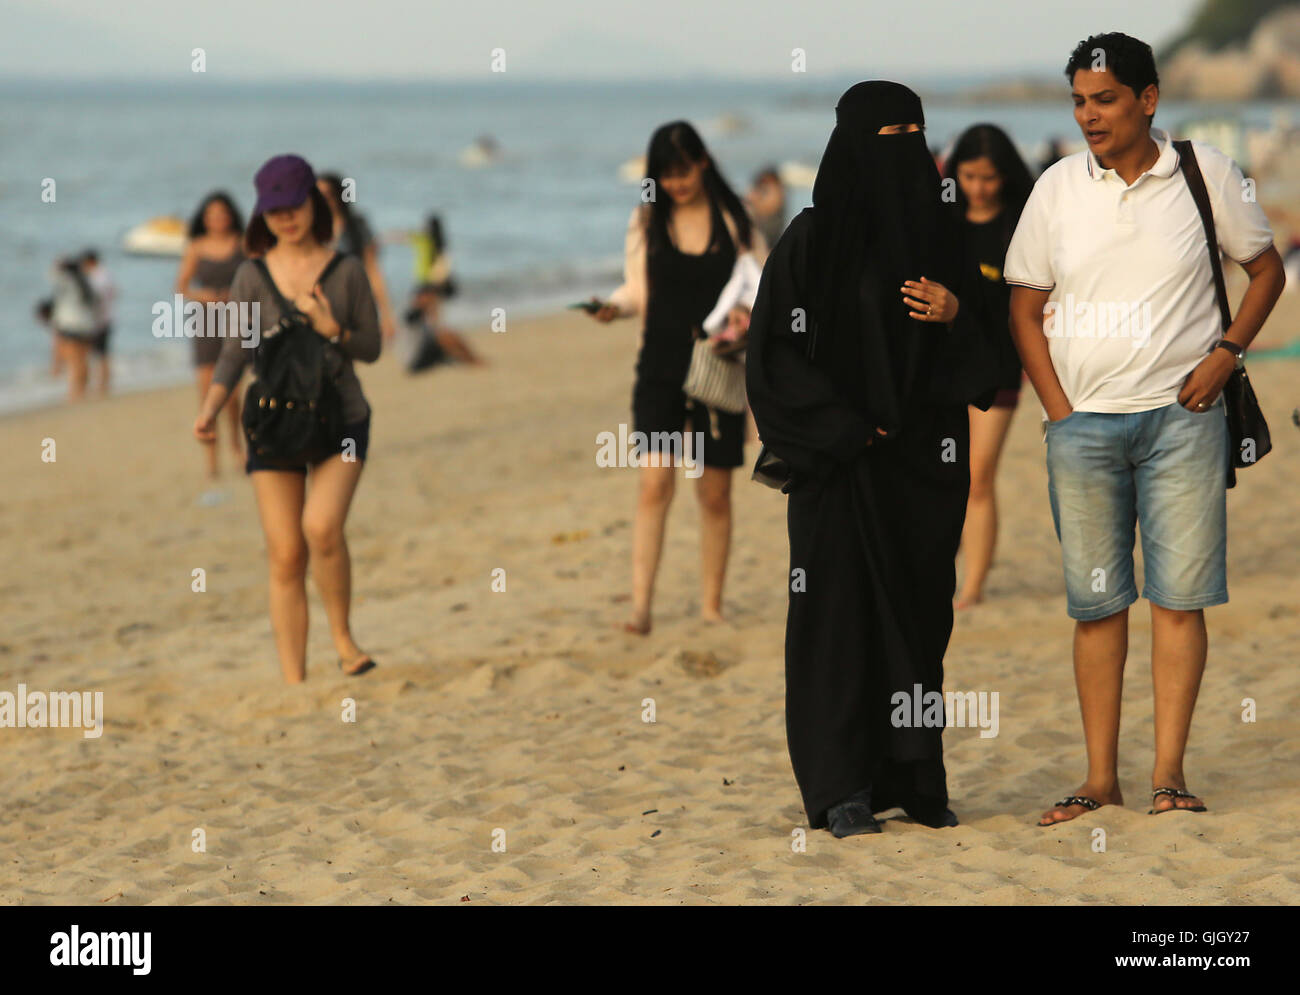 Distinguir Haz lo mejor que pueda apodo Febrero 24, 2016 - Penang, Malasia - mujeres musulmanas, vistiendo burqas,  completa y los hombres disfruten de un día en la playa de Penang, en  Malasia el 21 de febrero de 2016.